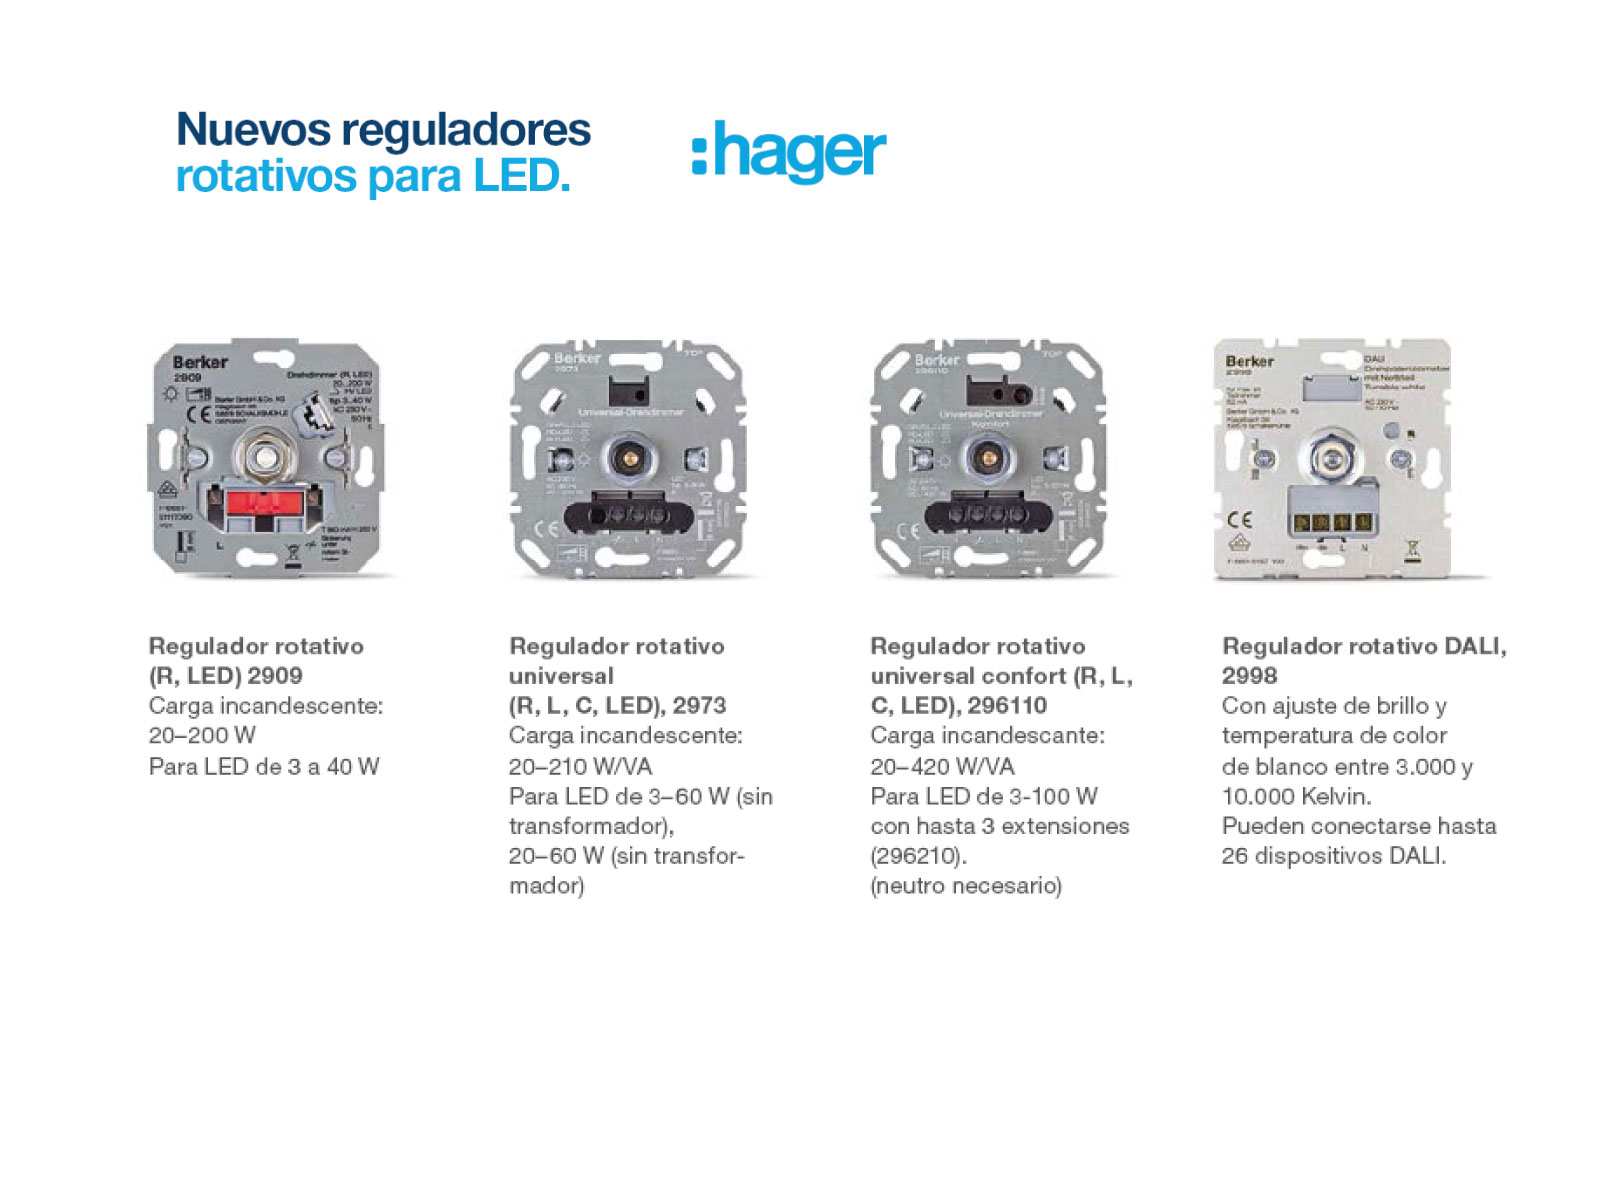 Nuevos reguladores rotativos para LED de Hager